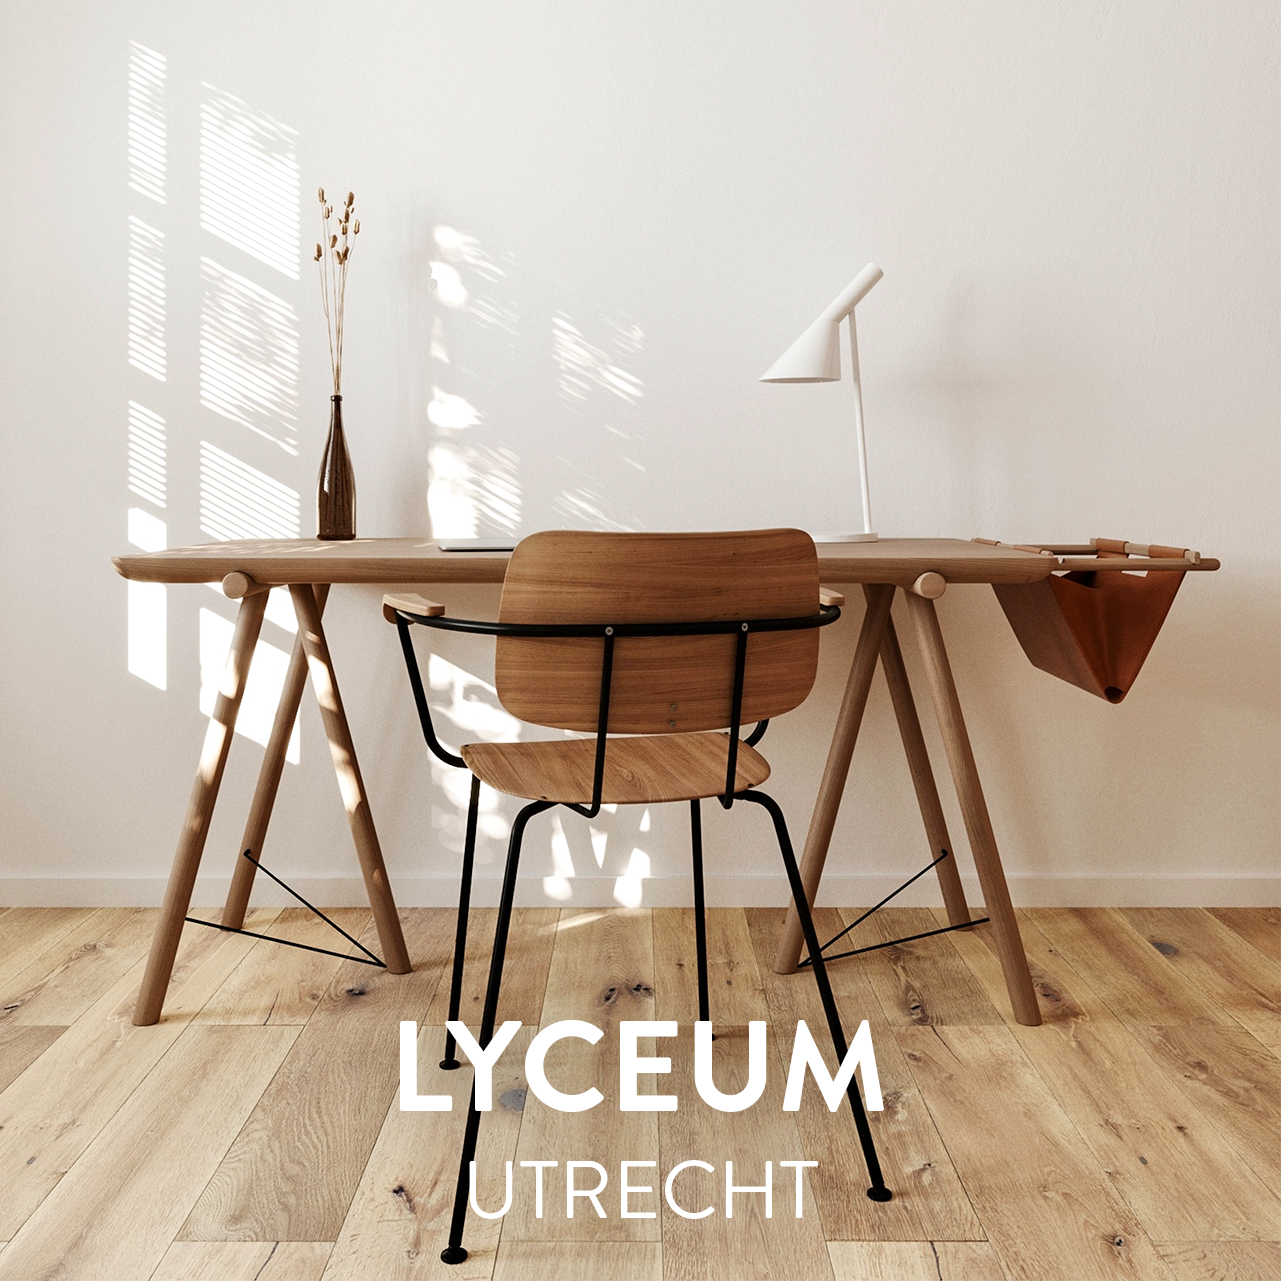 Lyceum | huurappartementen in het centrum van Utrecht